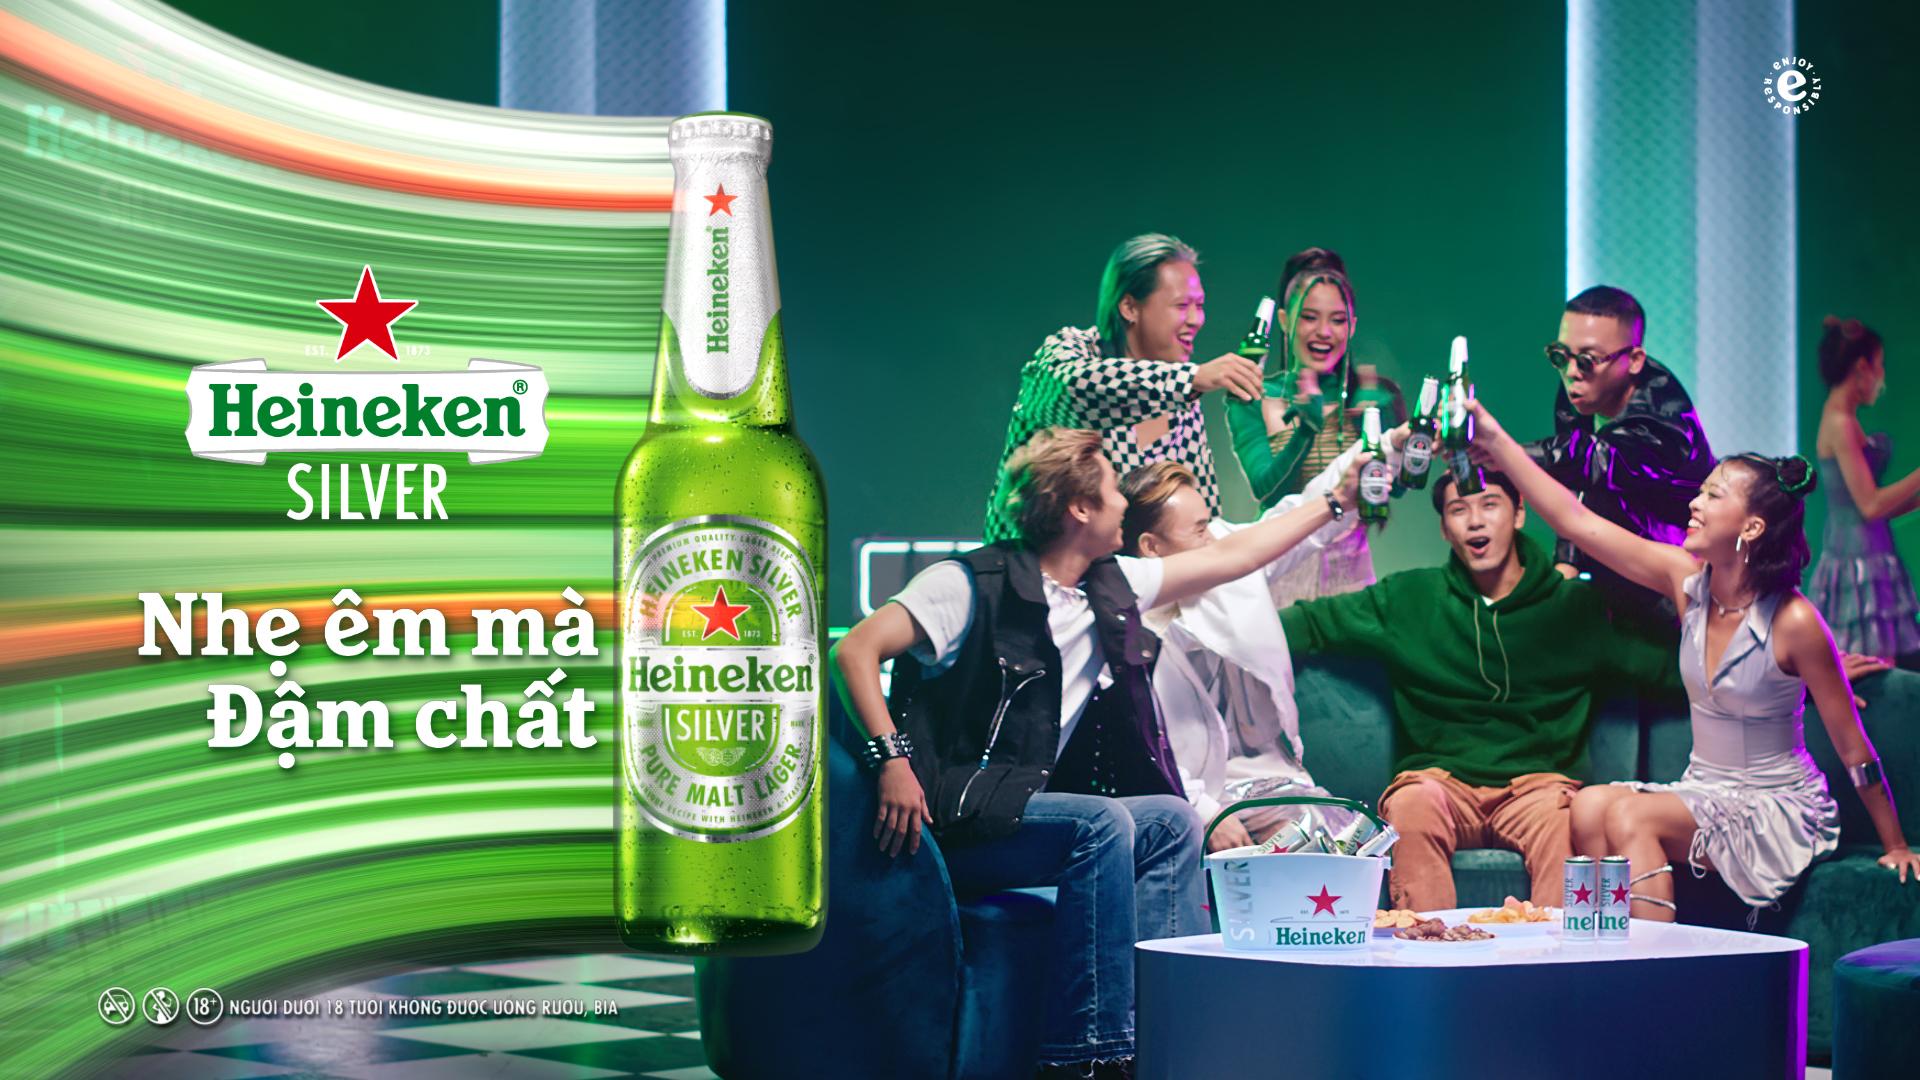 Hành trình người trẻ mở lối cuộc vui thời thượng cùng Heineken Silver-10